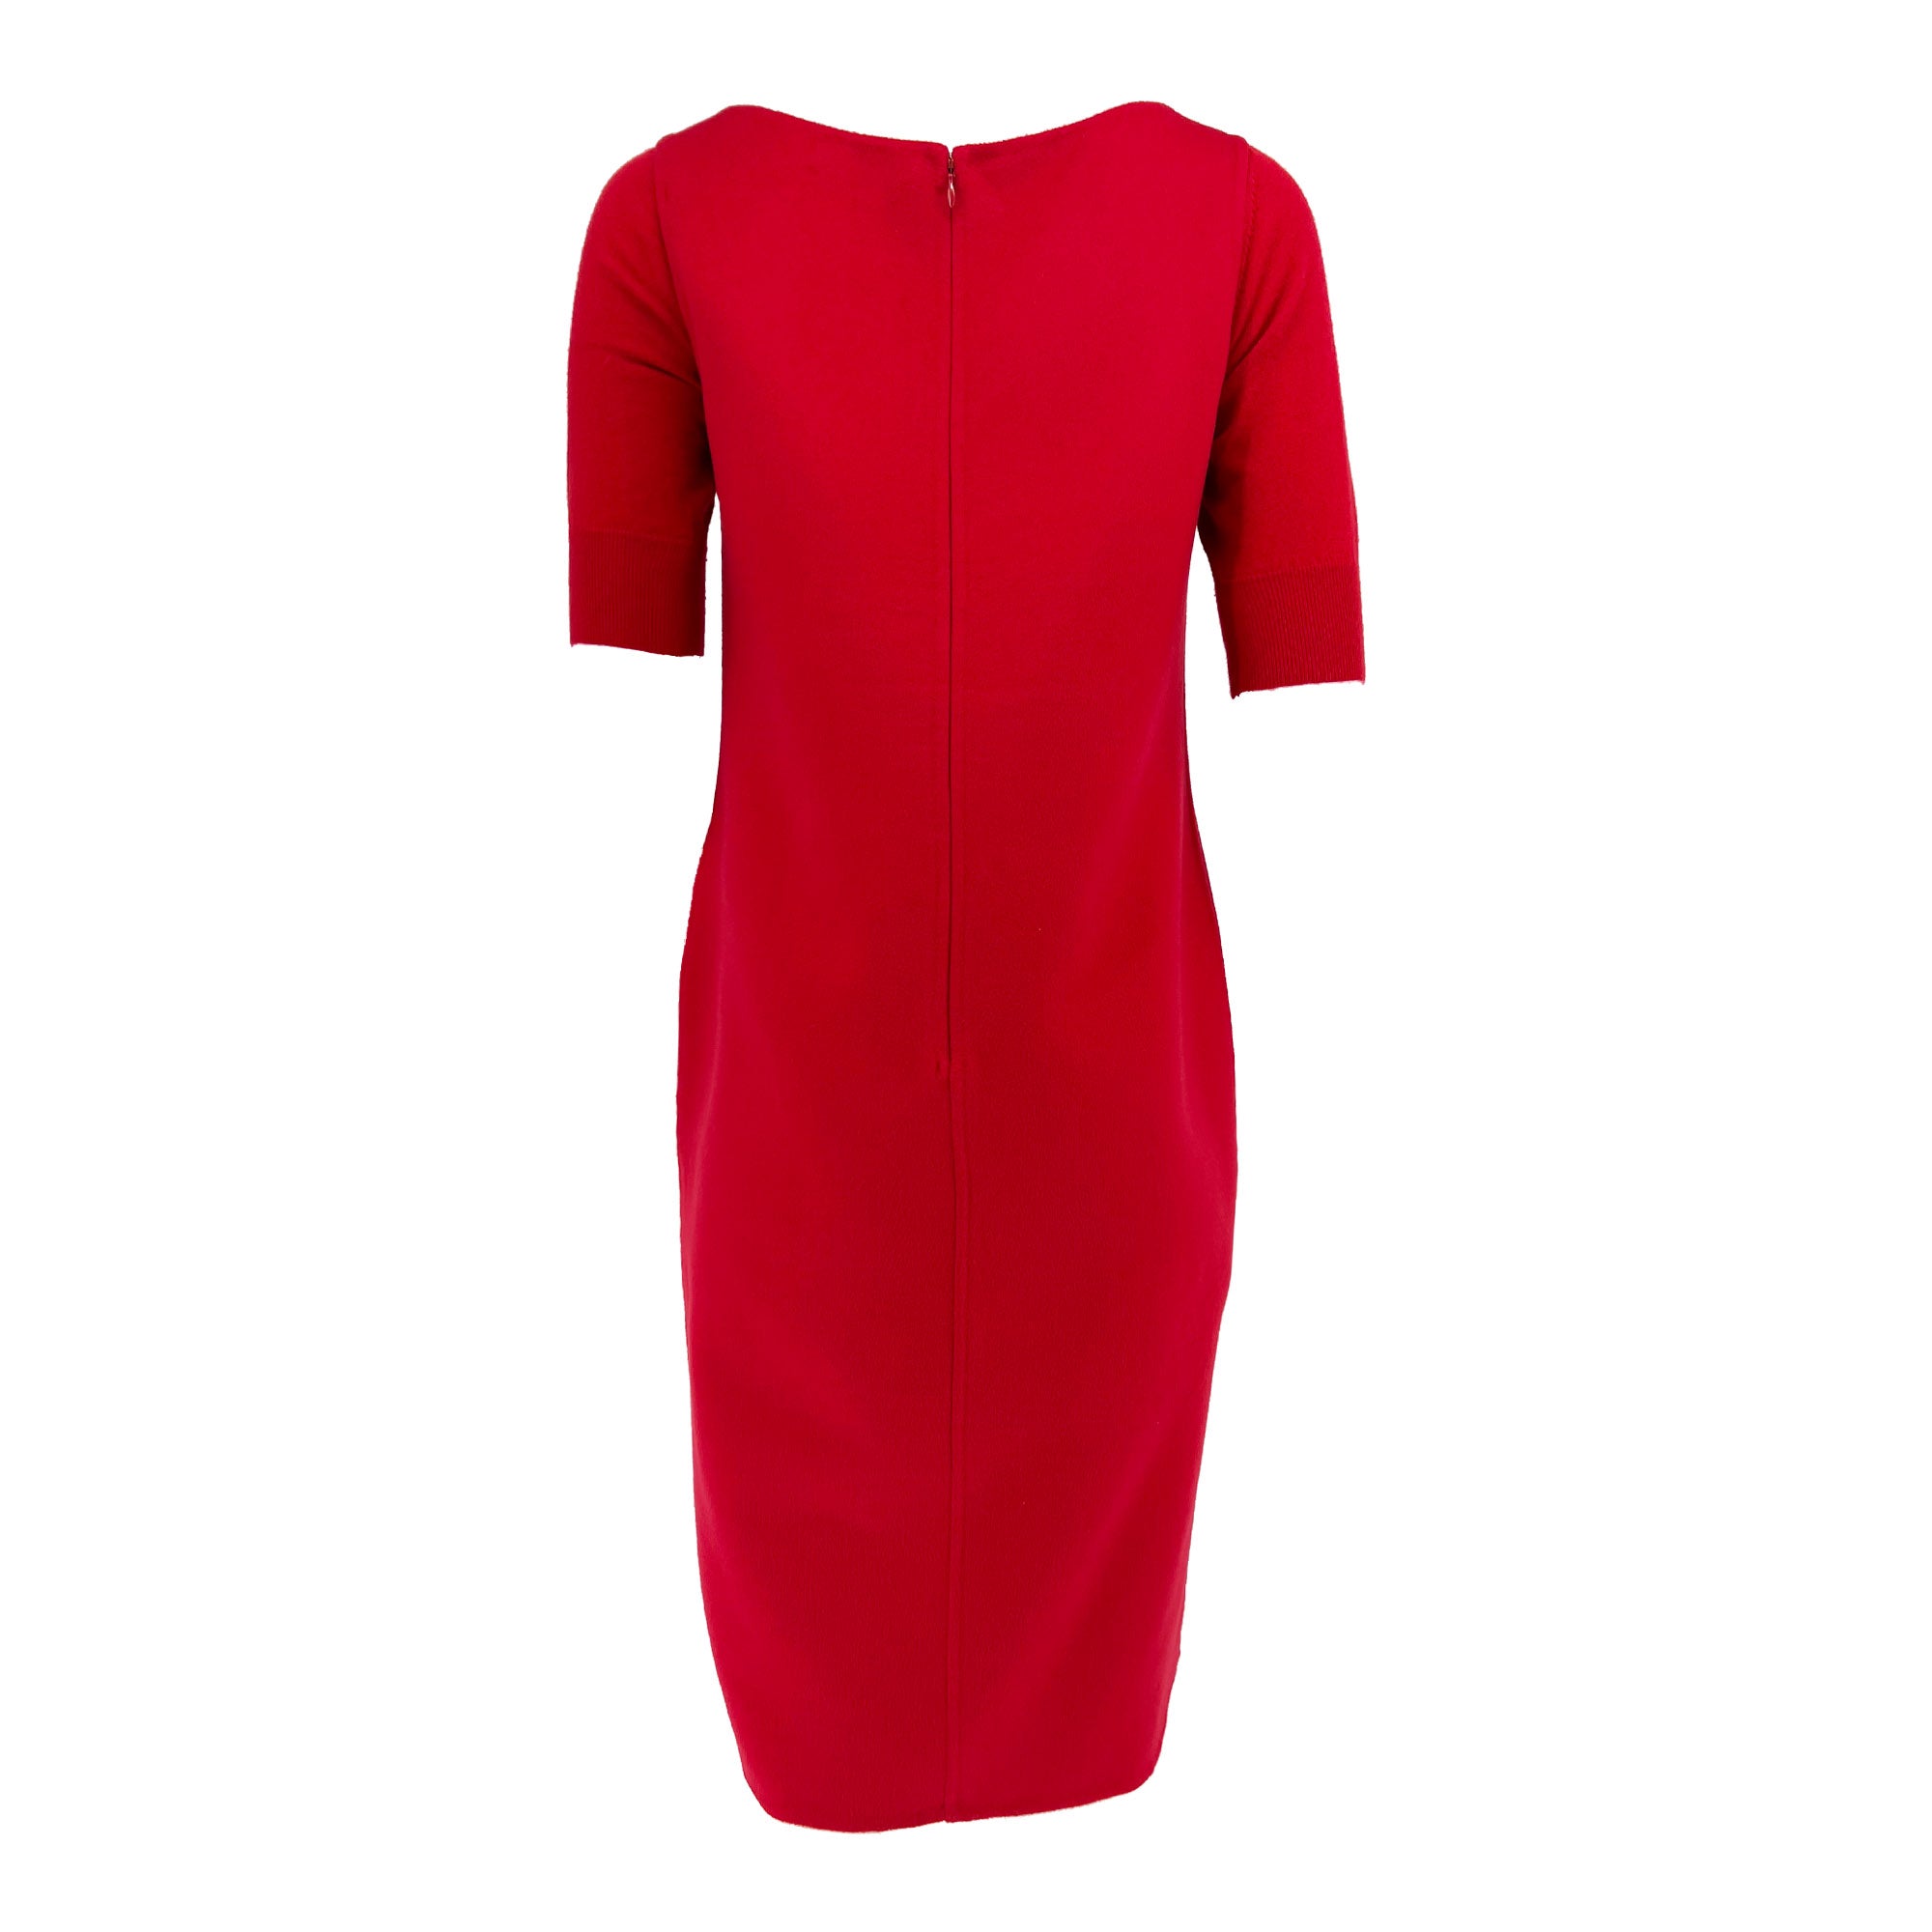 Christian Dior Vintage Red Dress